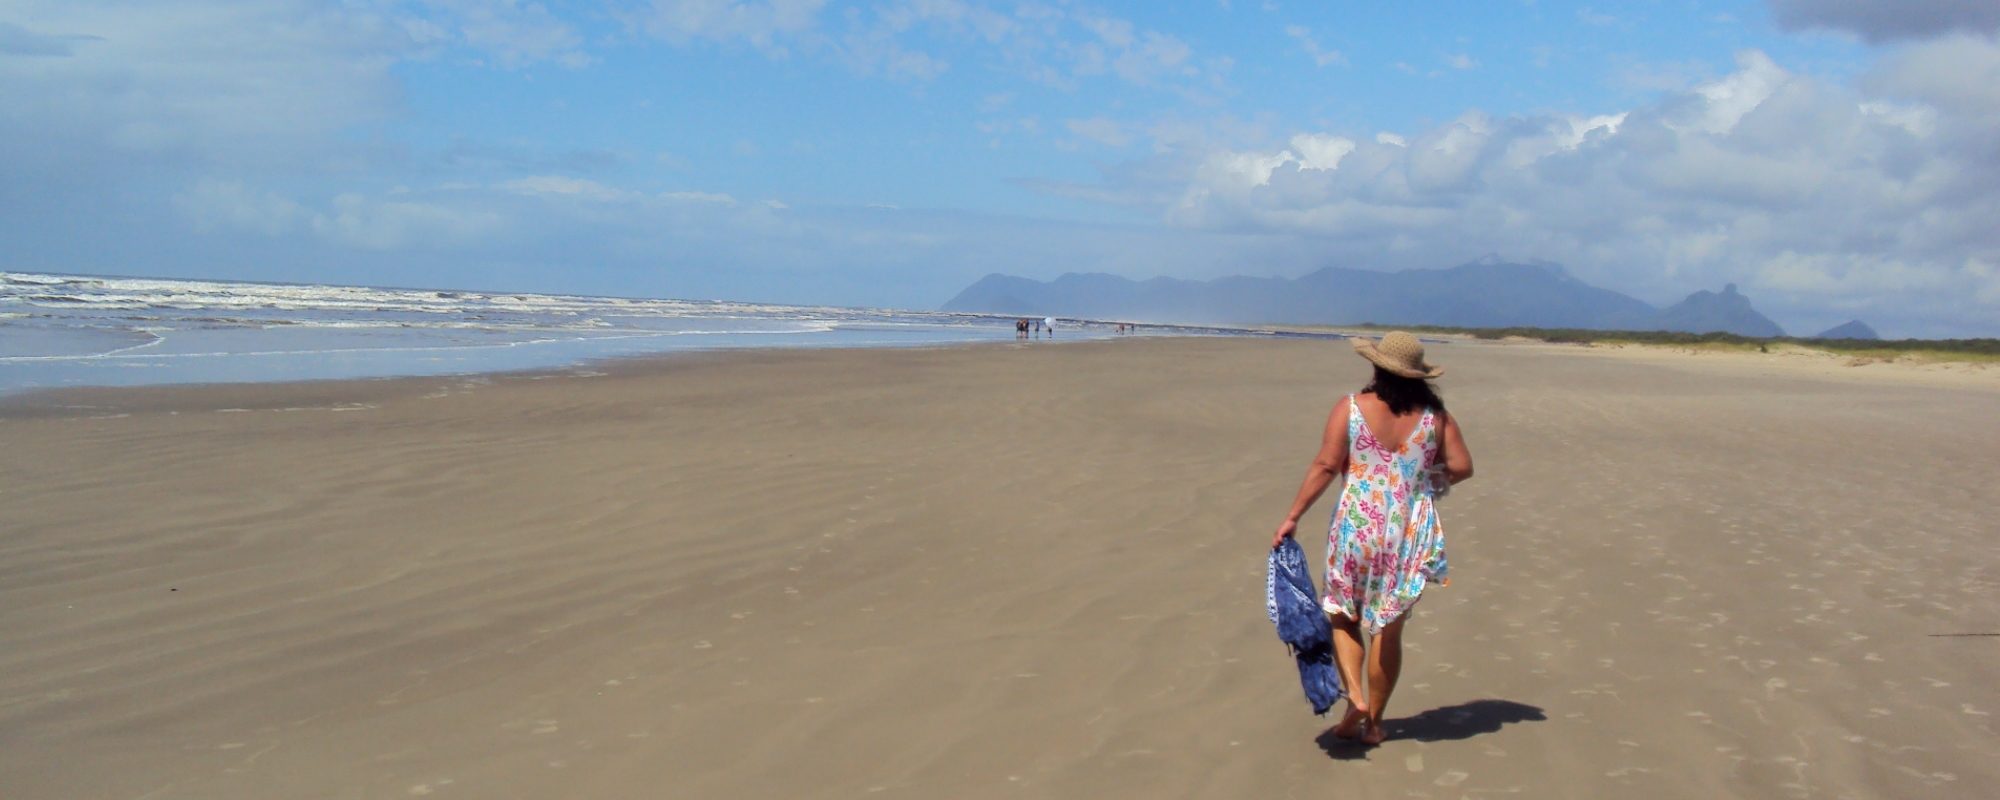 mulher caminhando em praia deserta